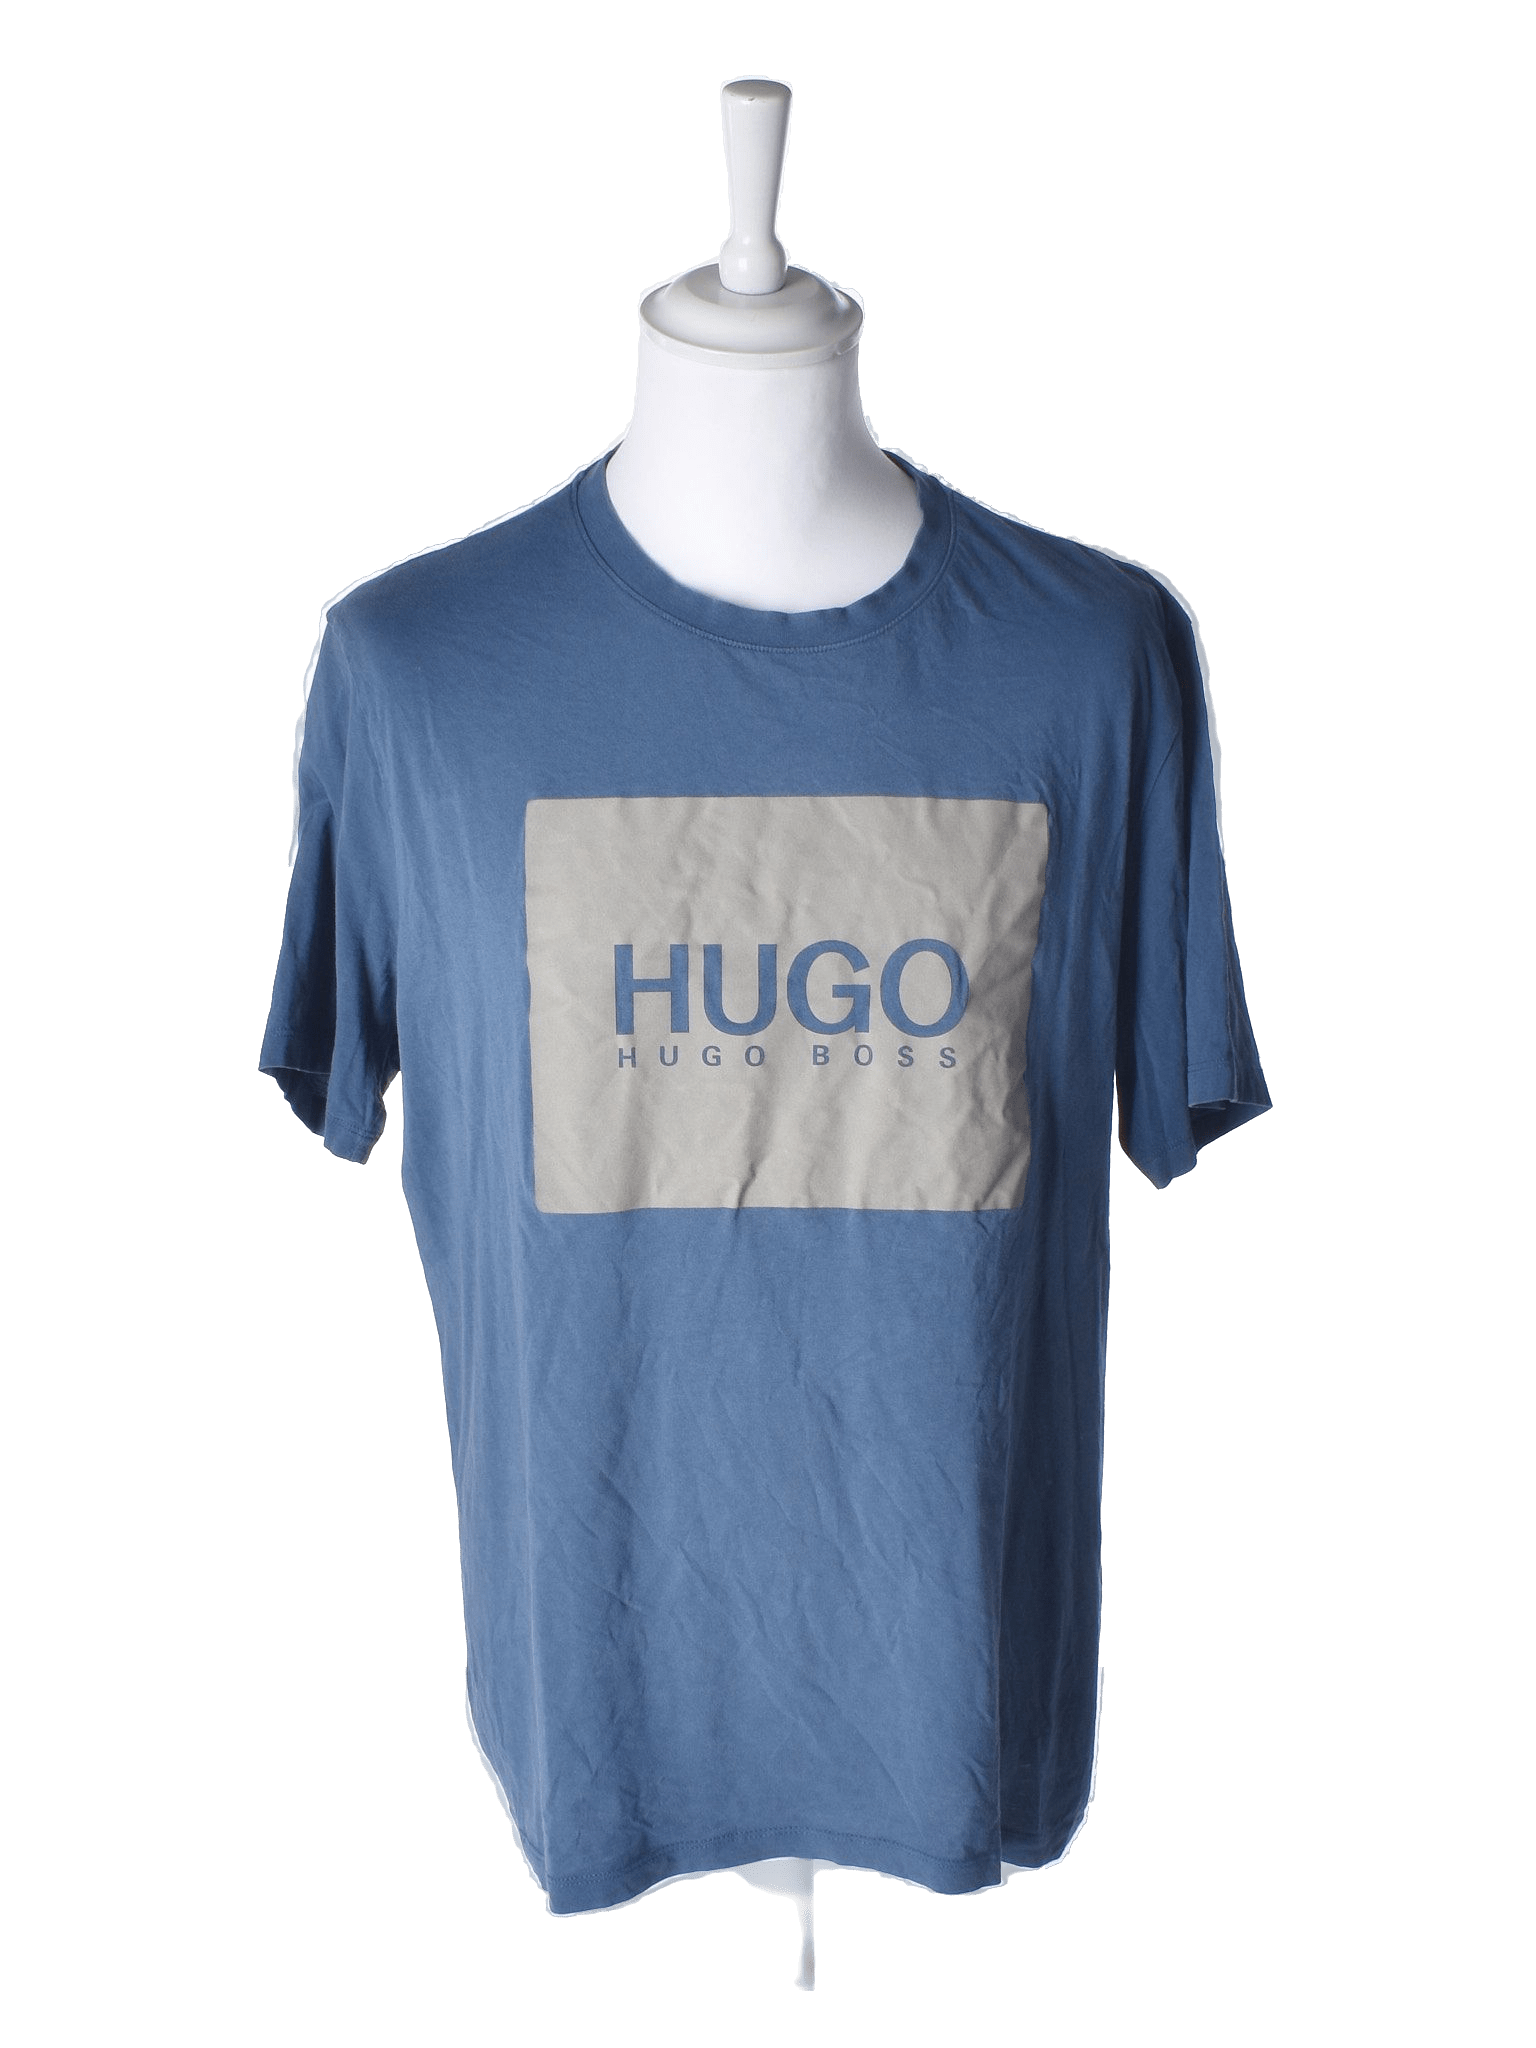 Hugo Boss T-Shirt - XL / Blå / Mand - SassyLAB Secondhand